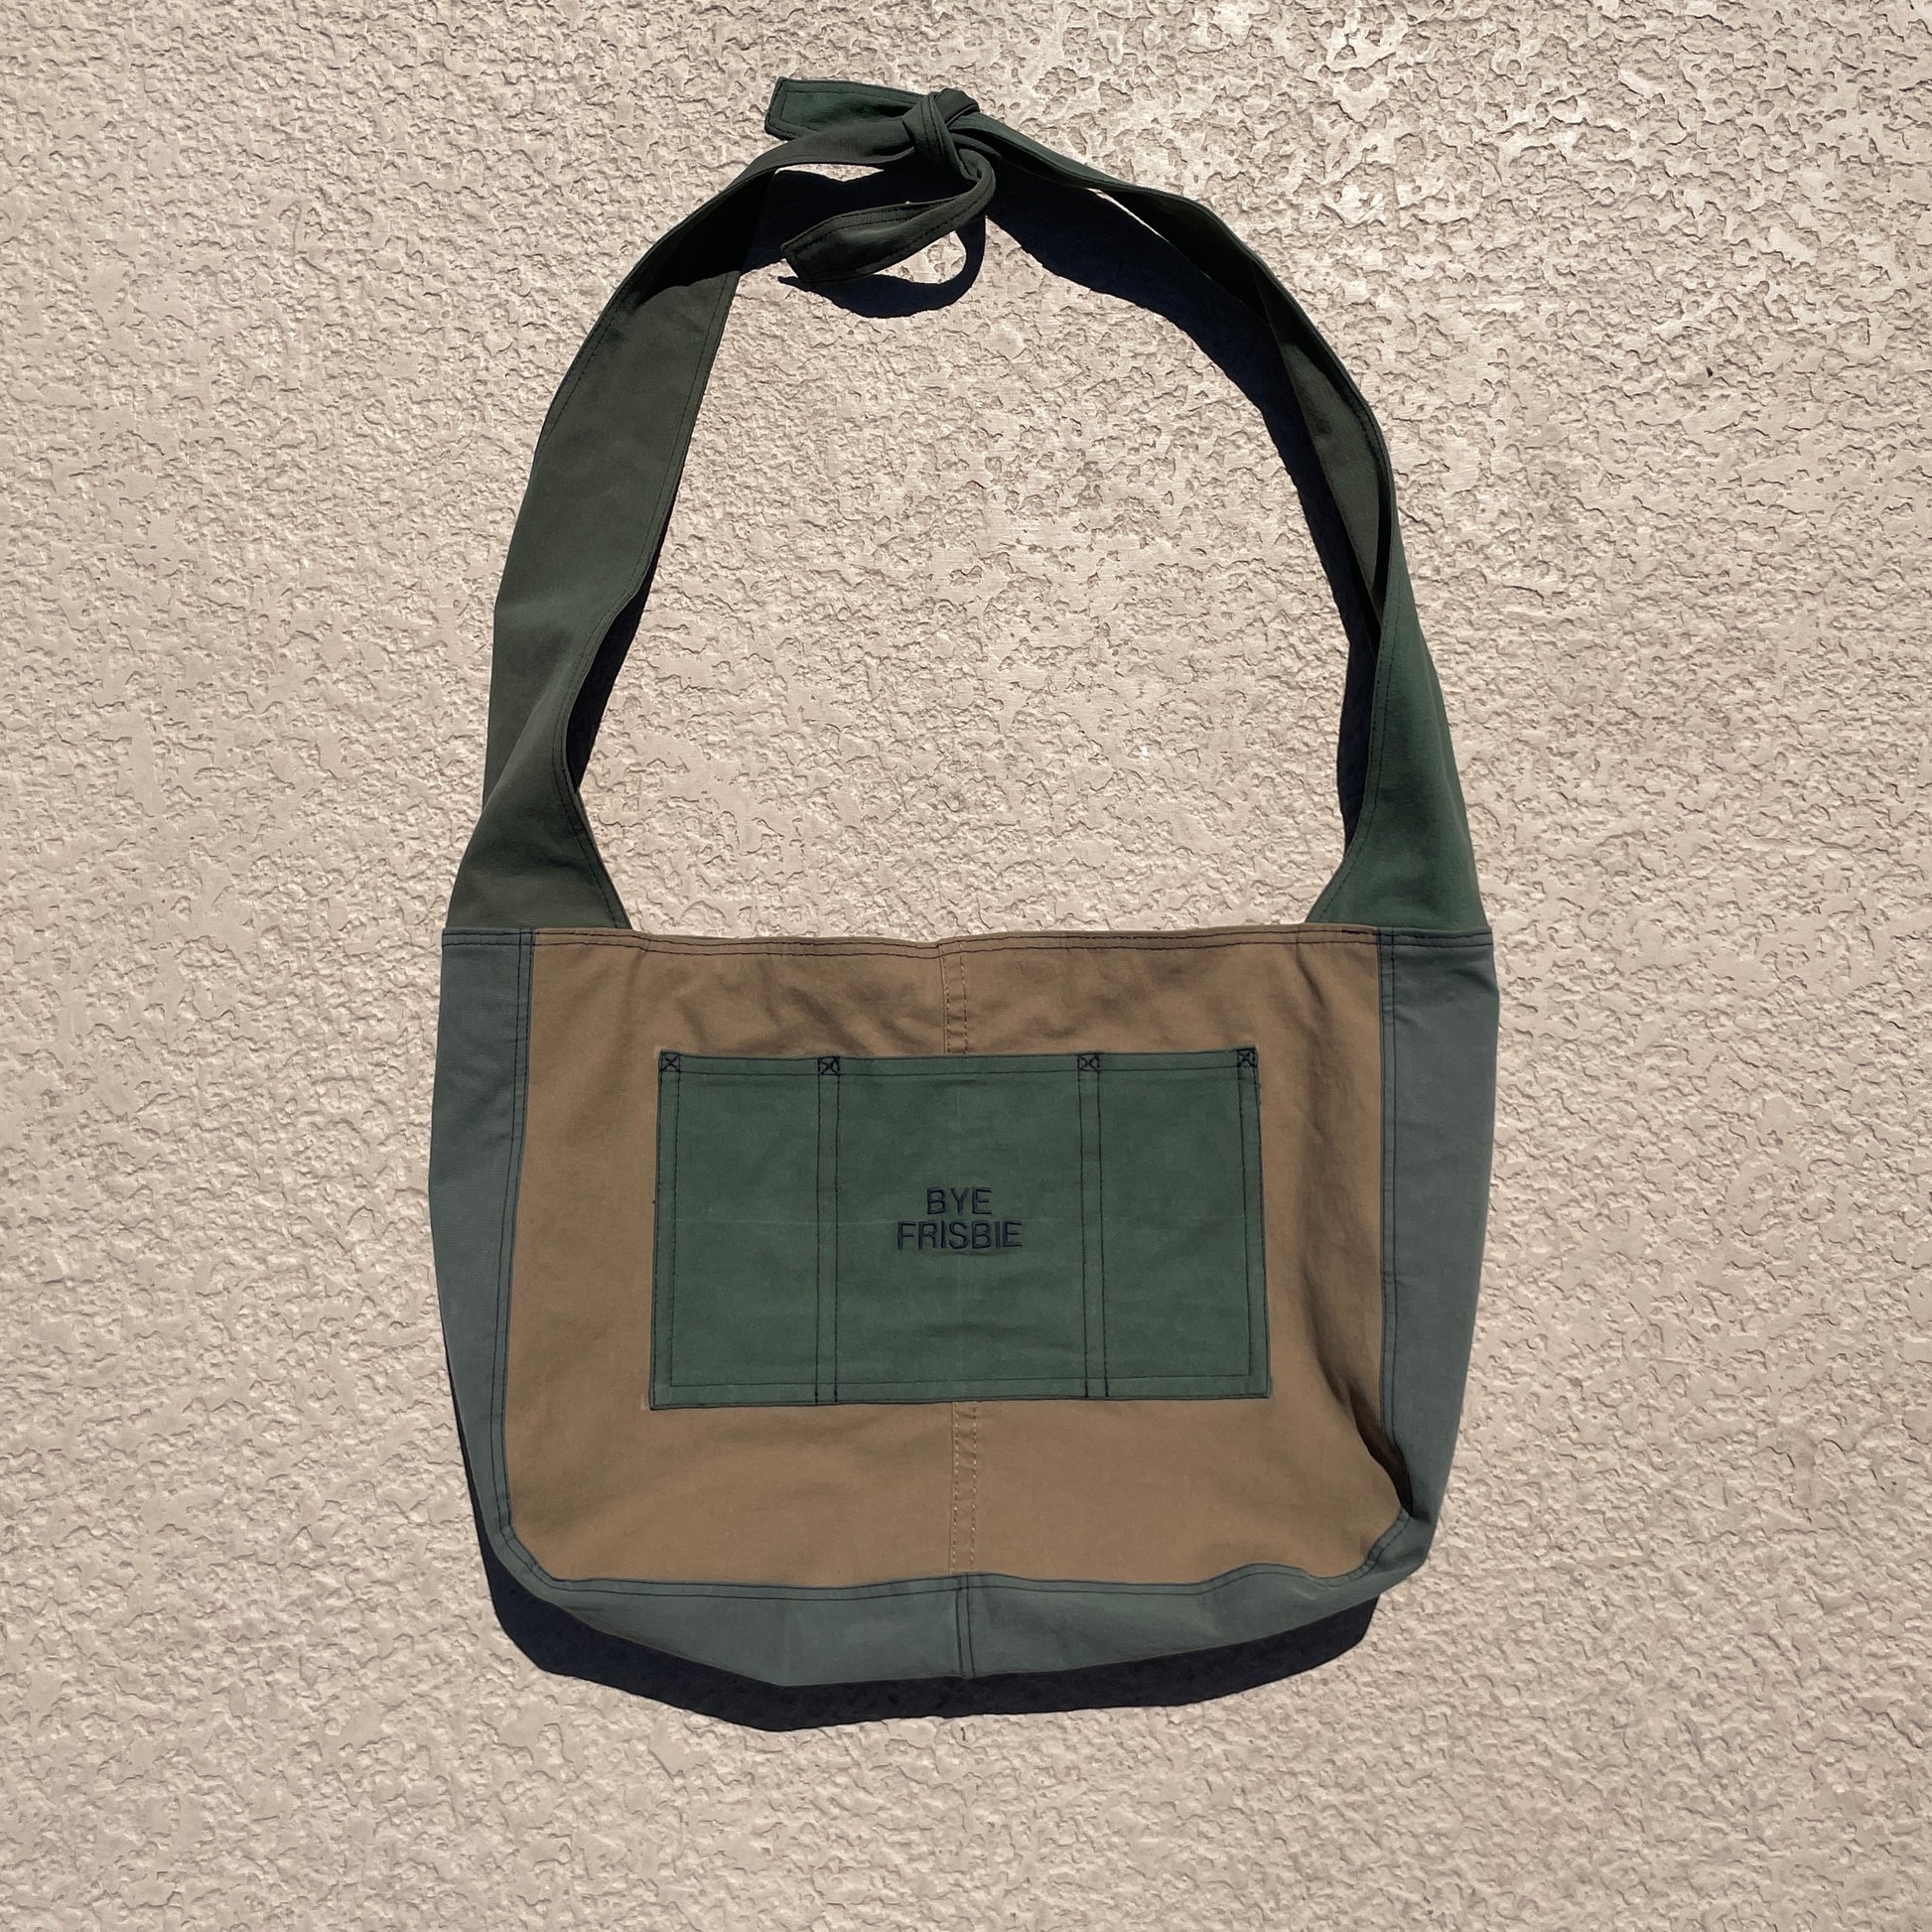 Tote Bag Pattern – Bye Frisbie